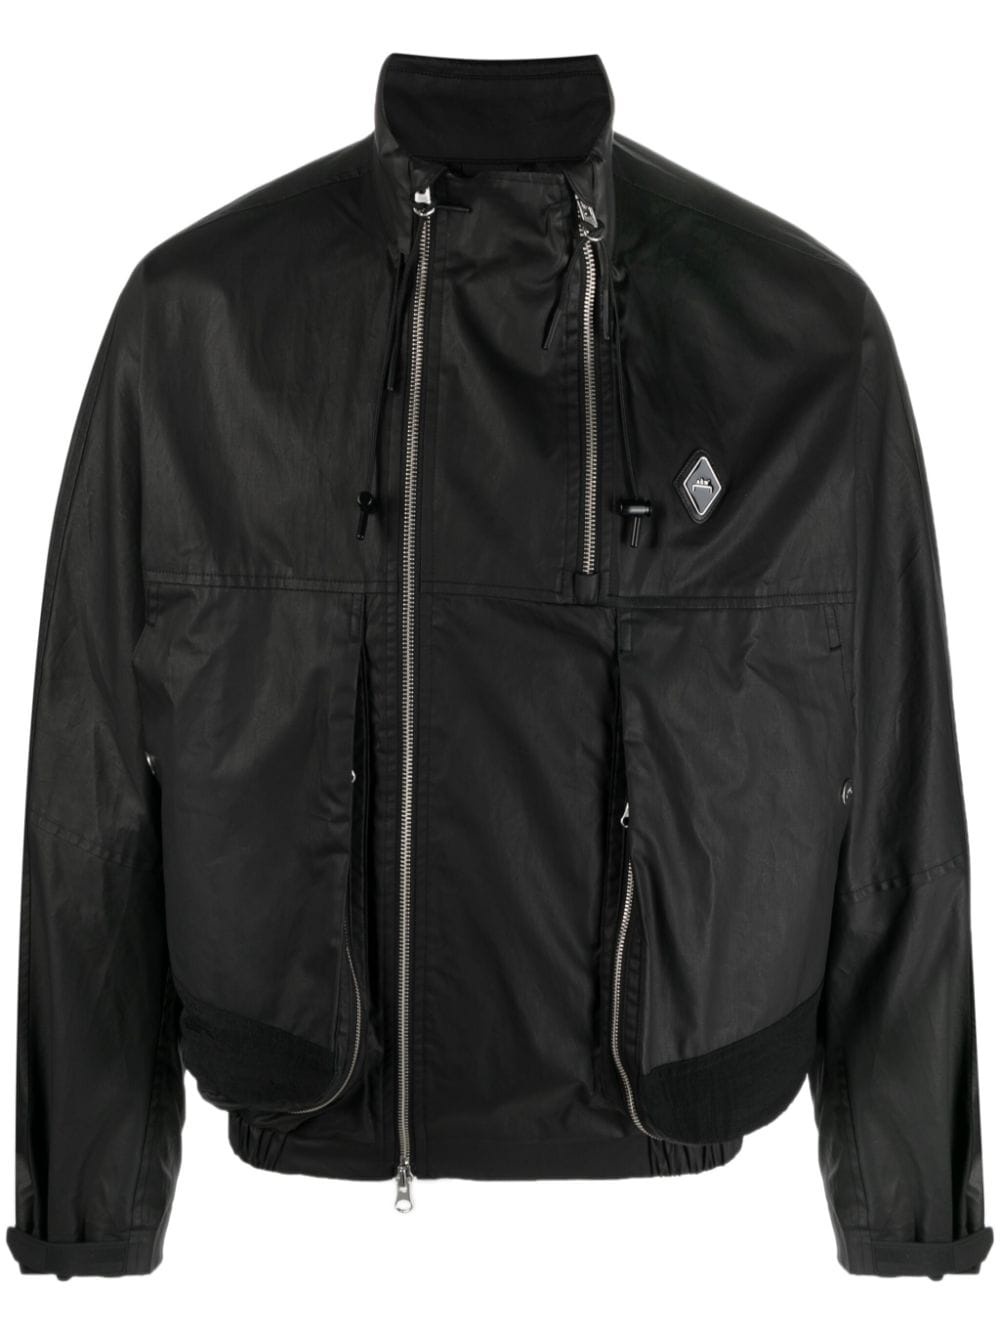 Vertex Harrington jacket - 1